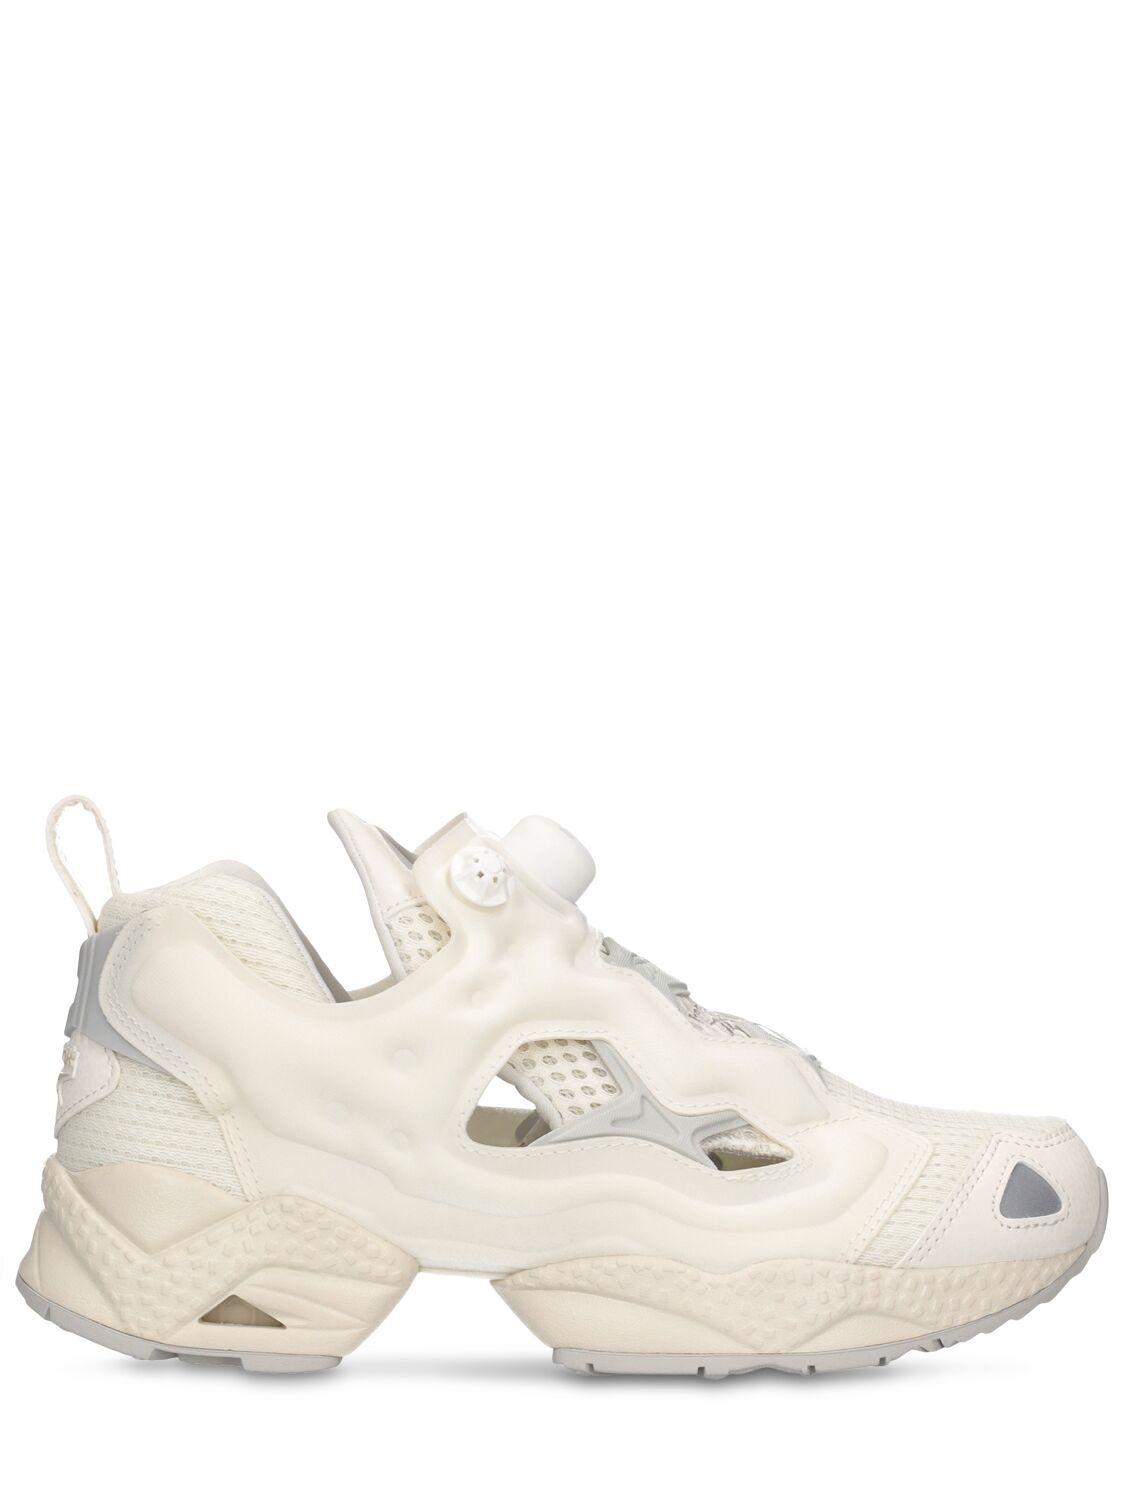 Image of Instapump Fury 95 Sneakers